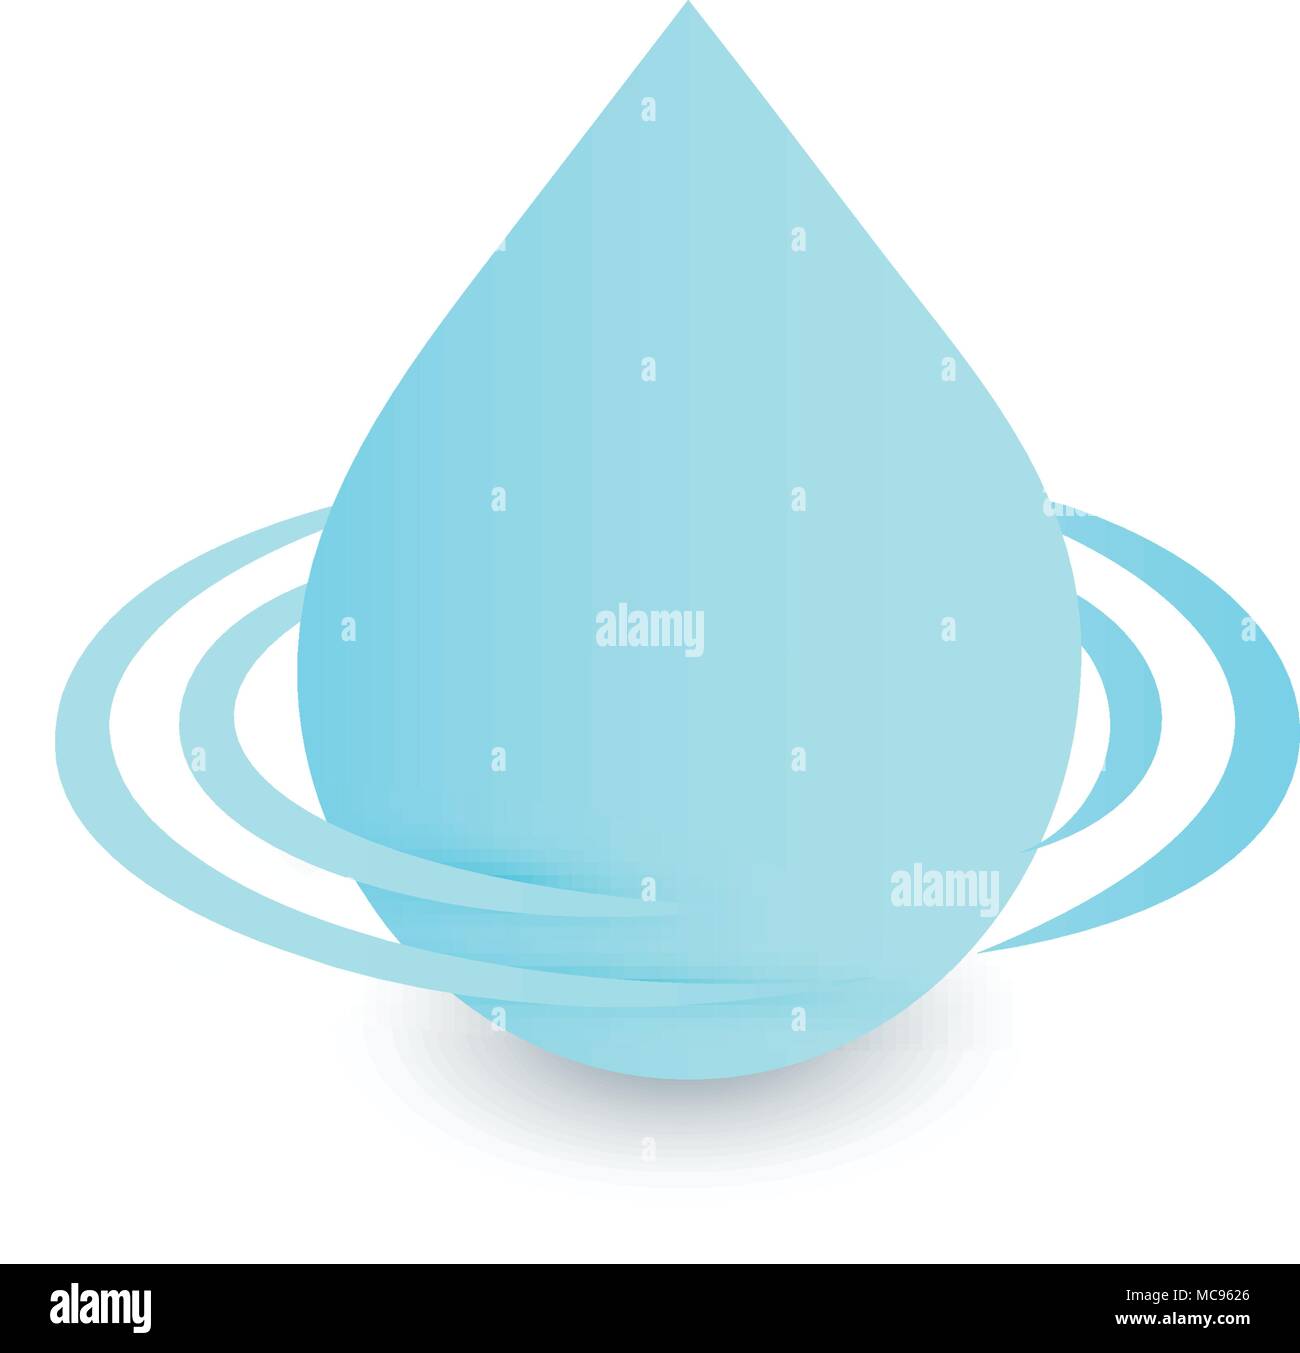 Logo goutte, l'eau propre signe, vecteur, l'icône droplet bleu aqua design symbole sur fond blanc. Boisson fraîche logotype modèle. Illustration de Vecteur